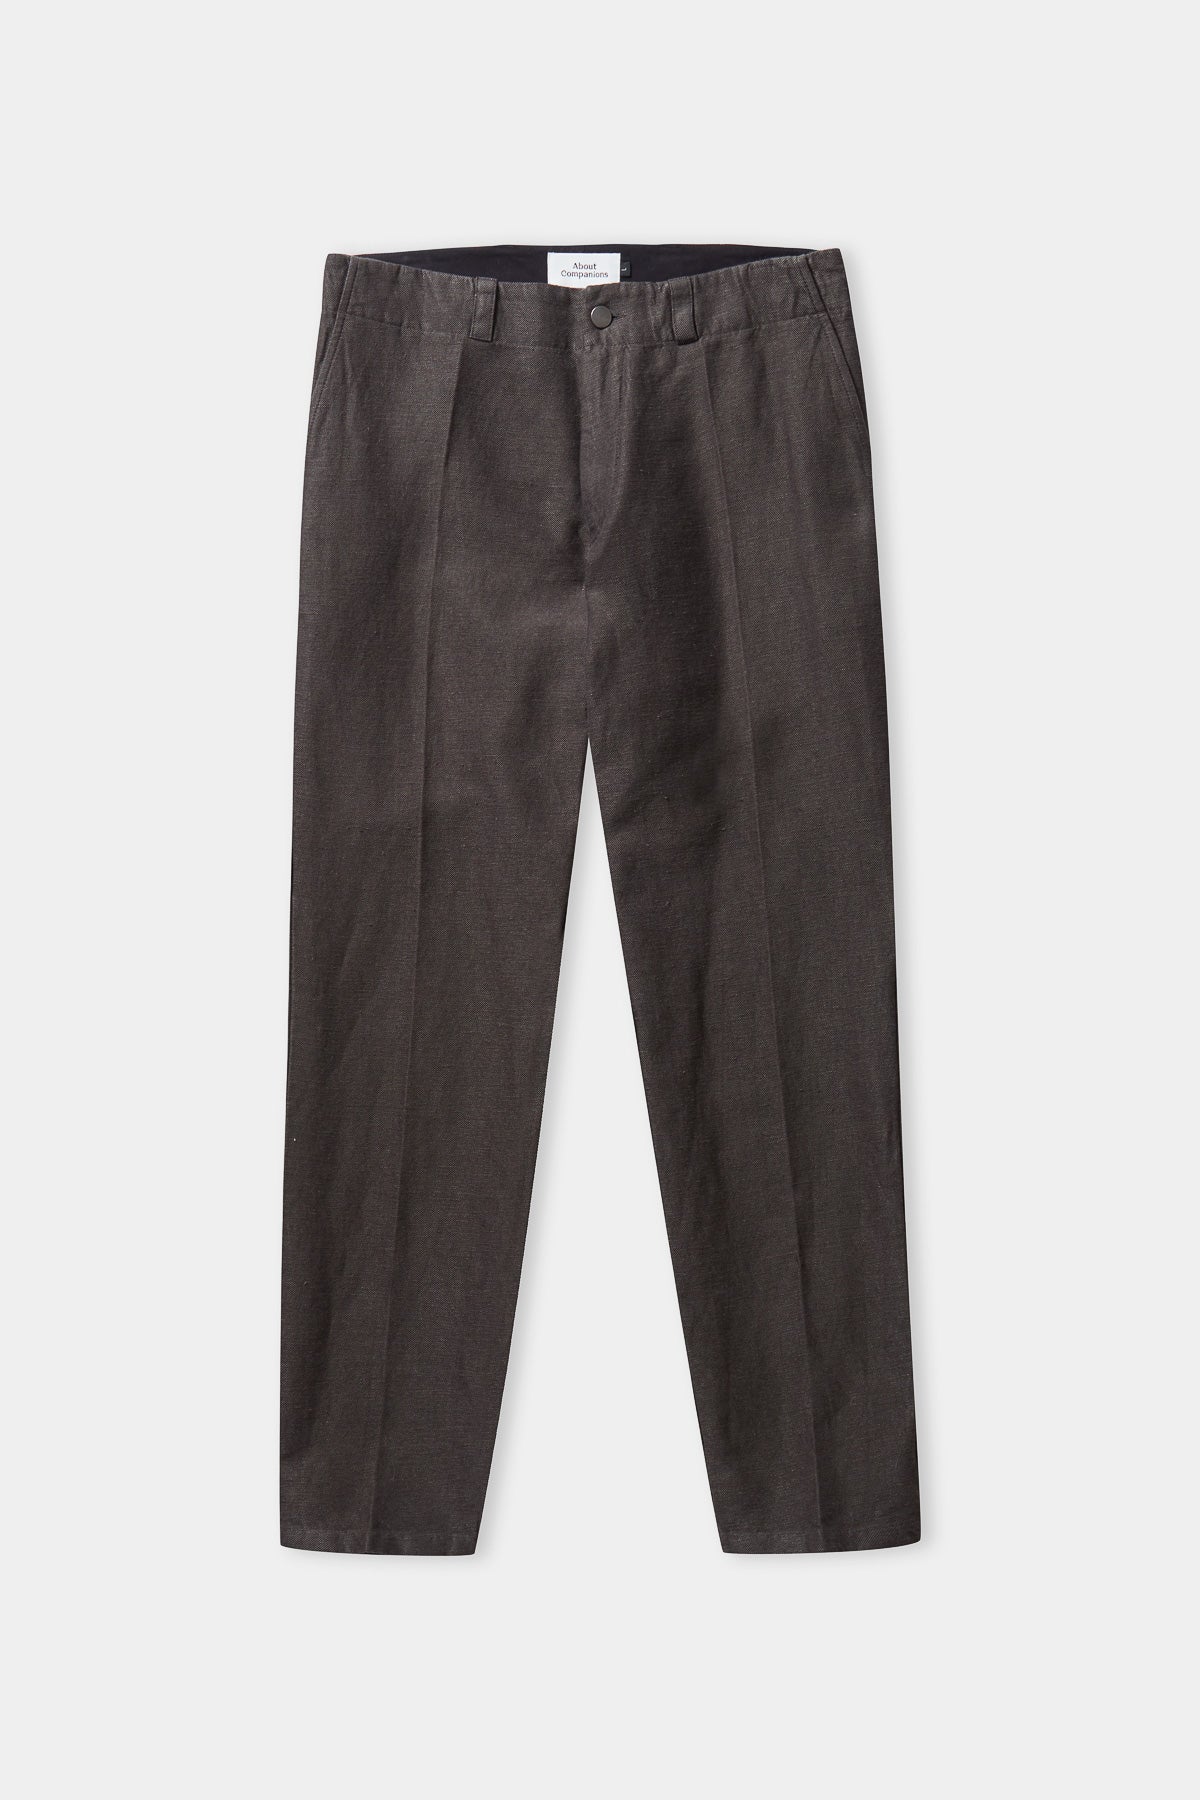 JOSTHA trousers steel winter linen